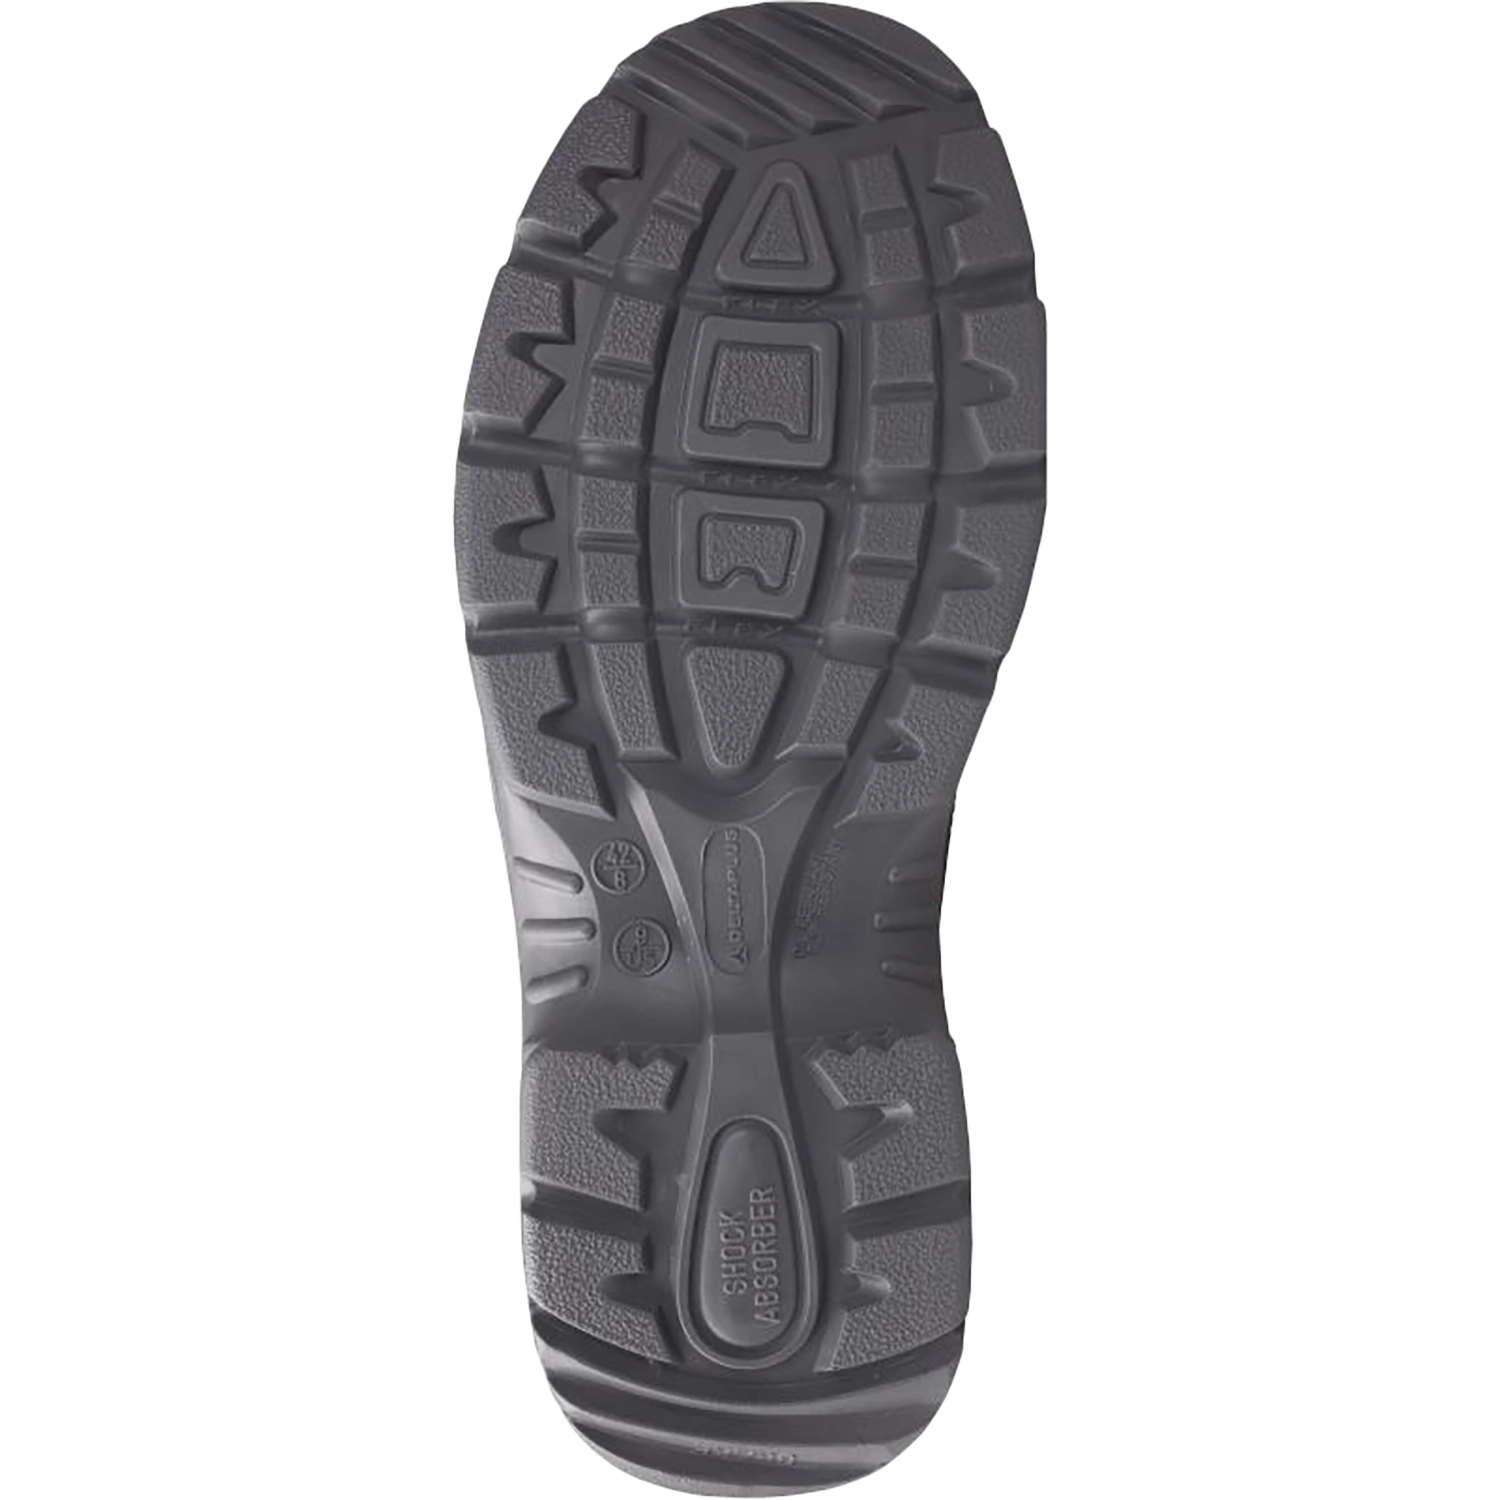 Hoog model schoenen - X-Large  - Sault S3 - zwart - maat 48